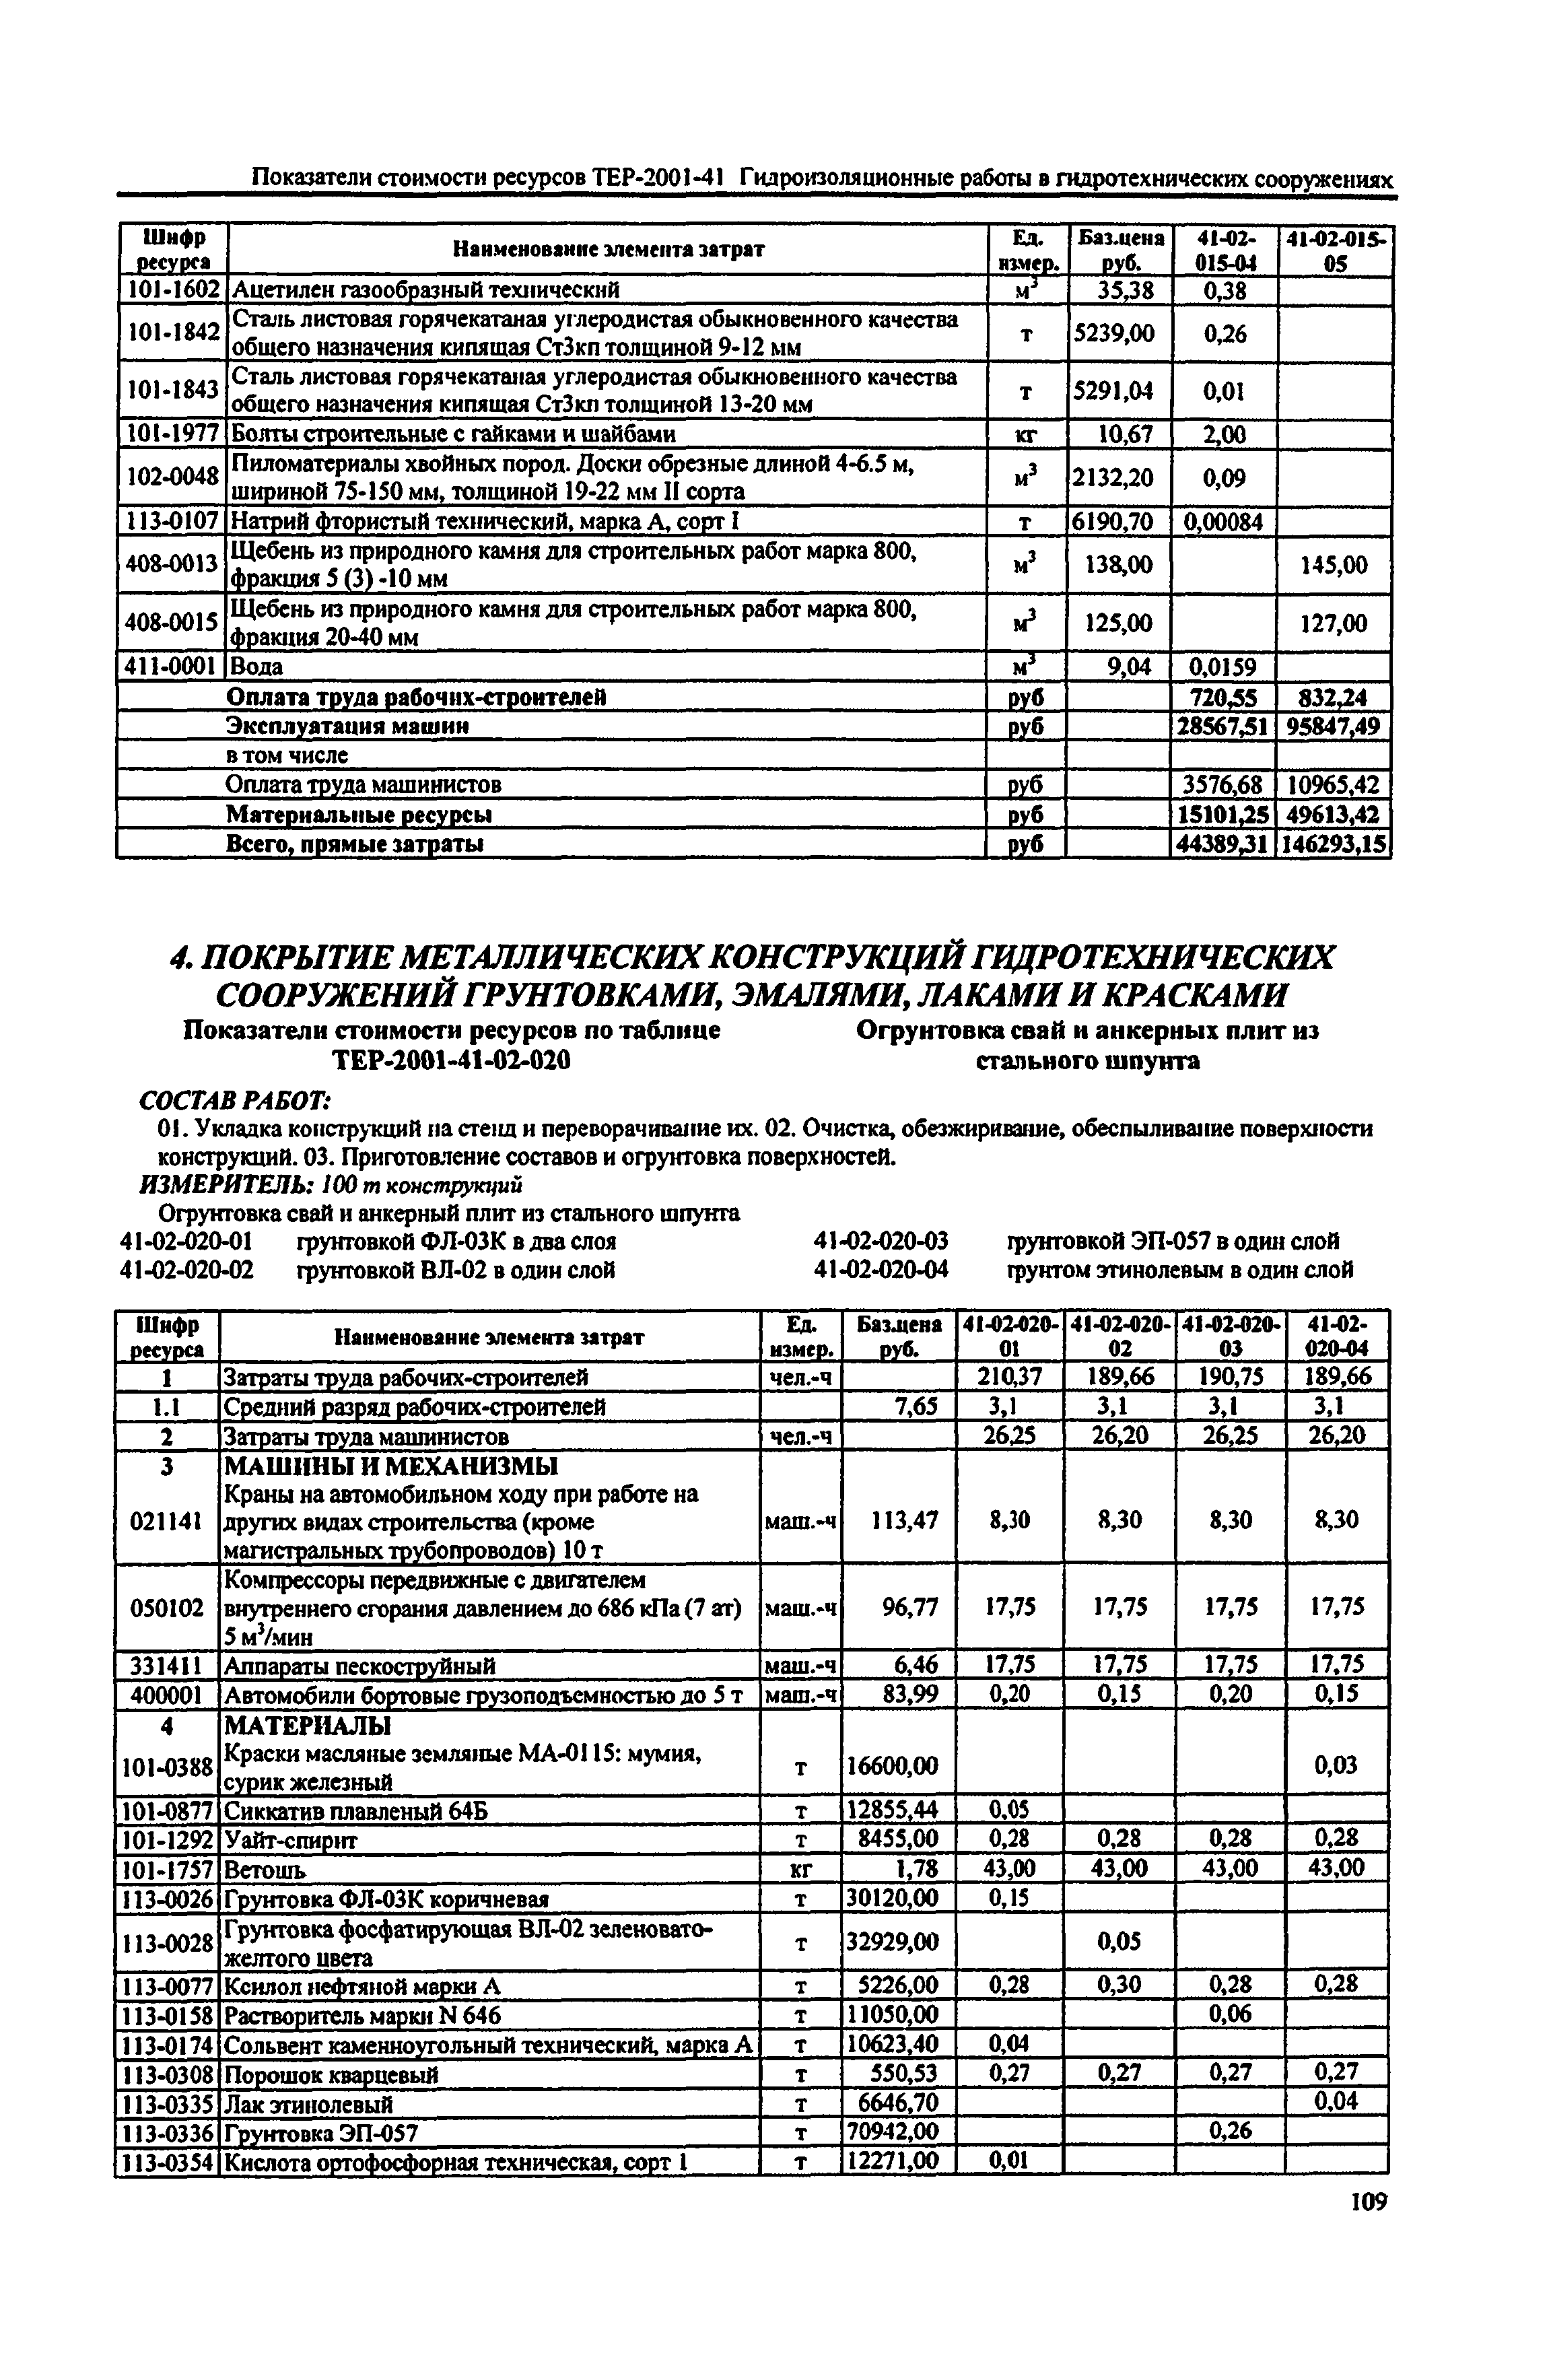 Справочное пособие к ТЕР 81-02-41-2001